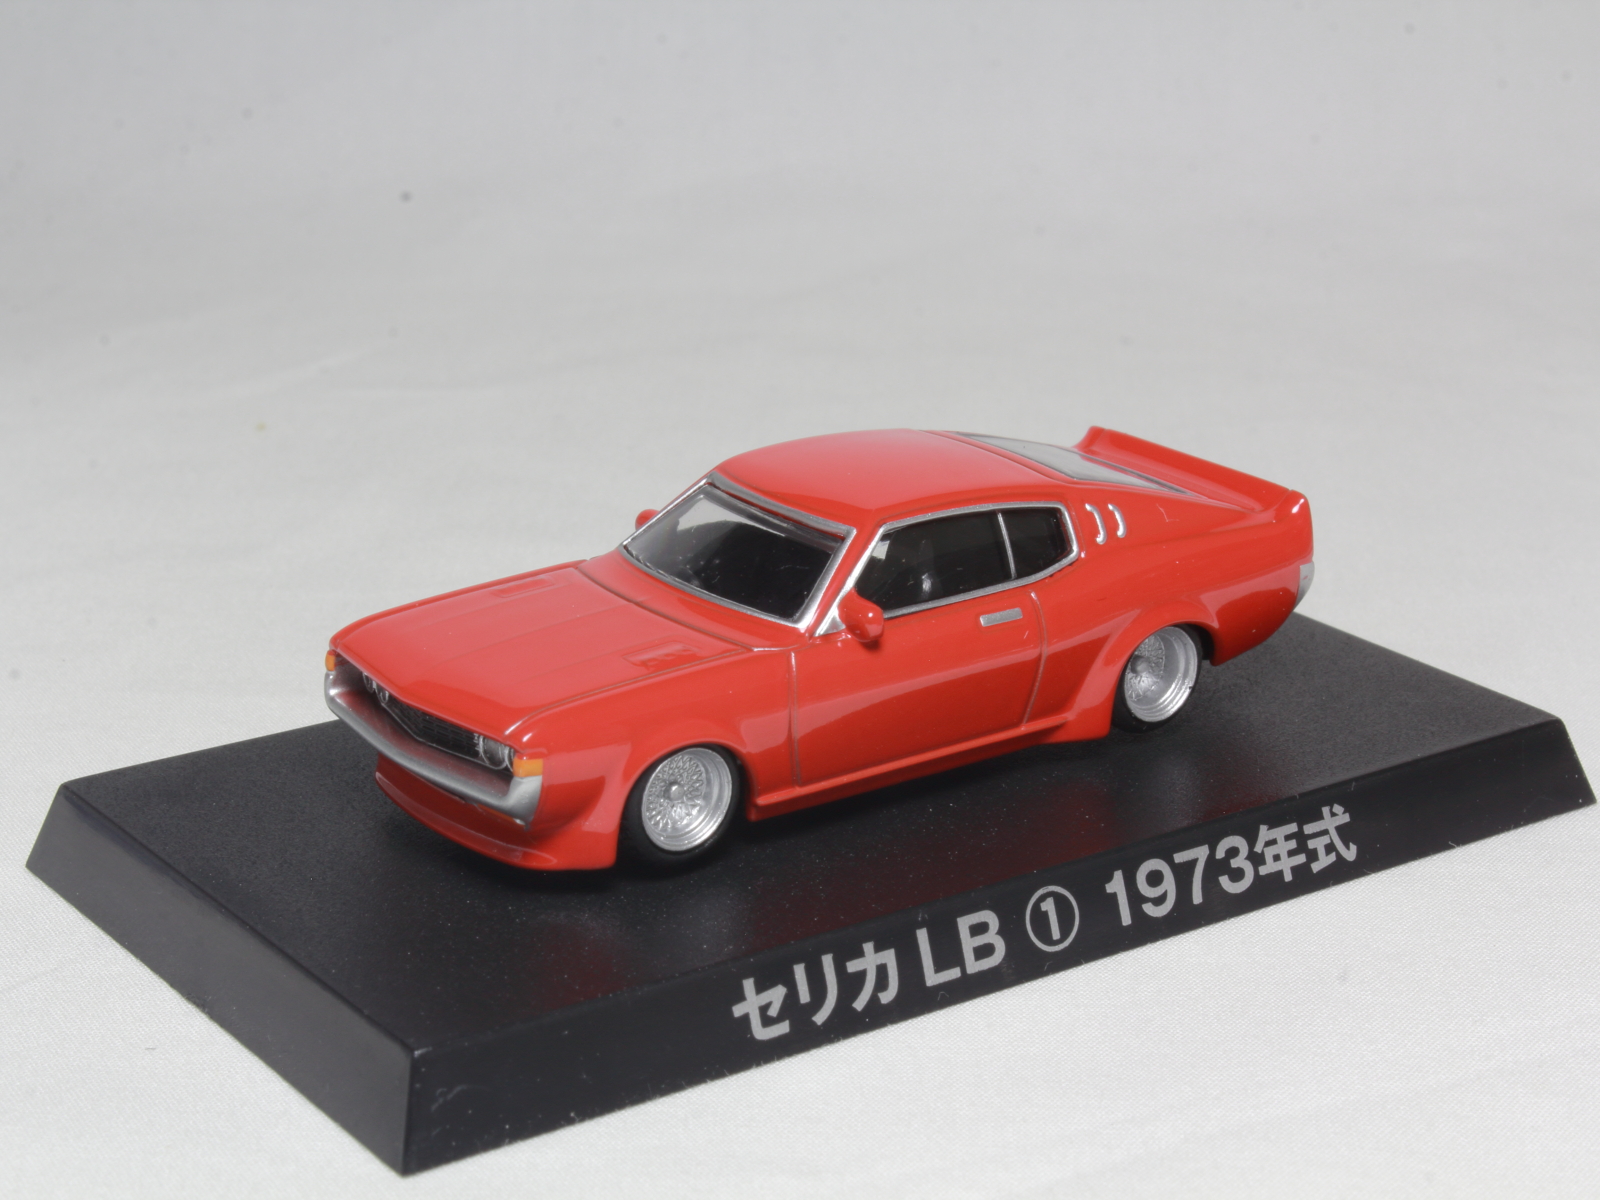 アオシマ グラチャンコレクション トヨタ セリカLB 1973 1/64 Aoshima Toyota Celica Liftback 1976